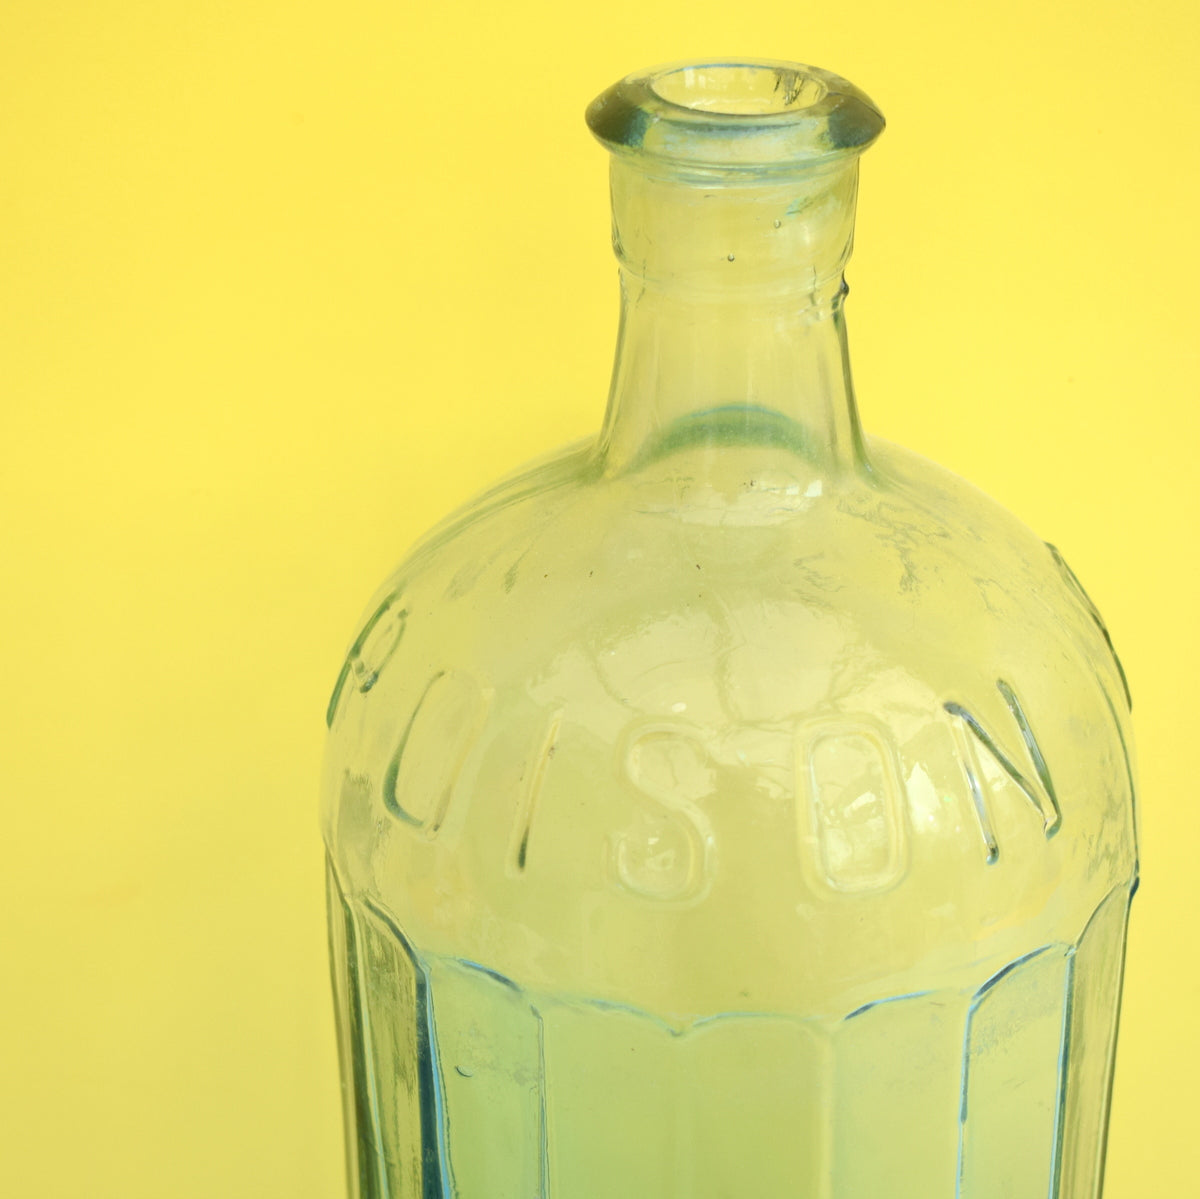 Vintage 1920s Glass Poison Bottle - Huge - Clear